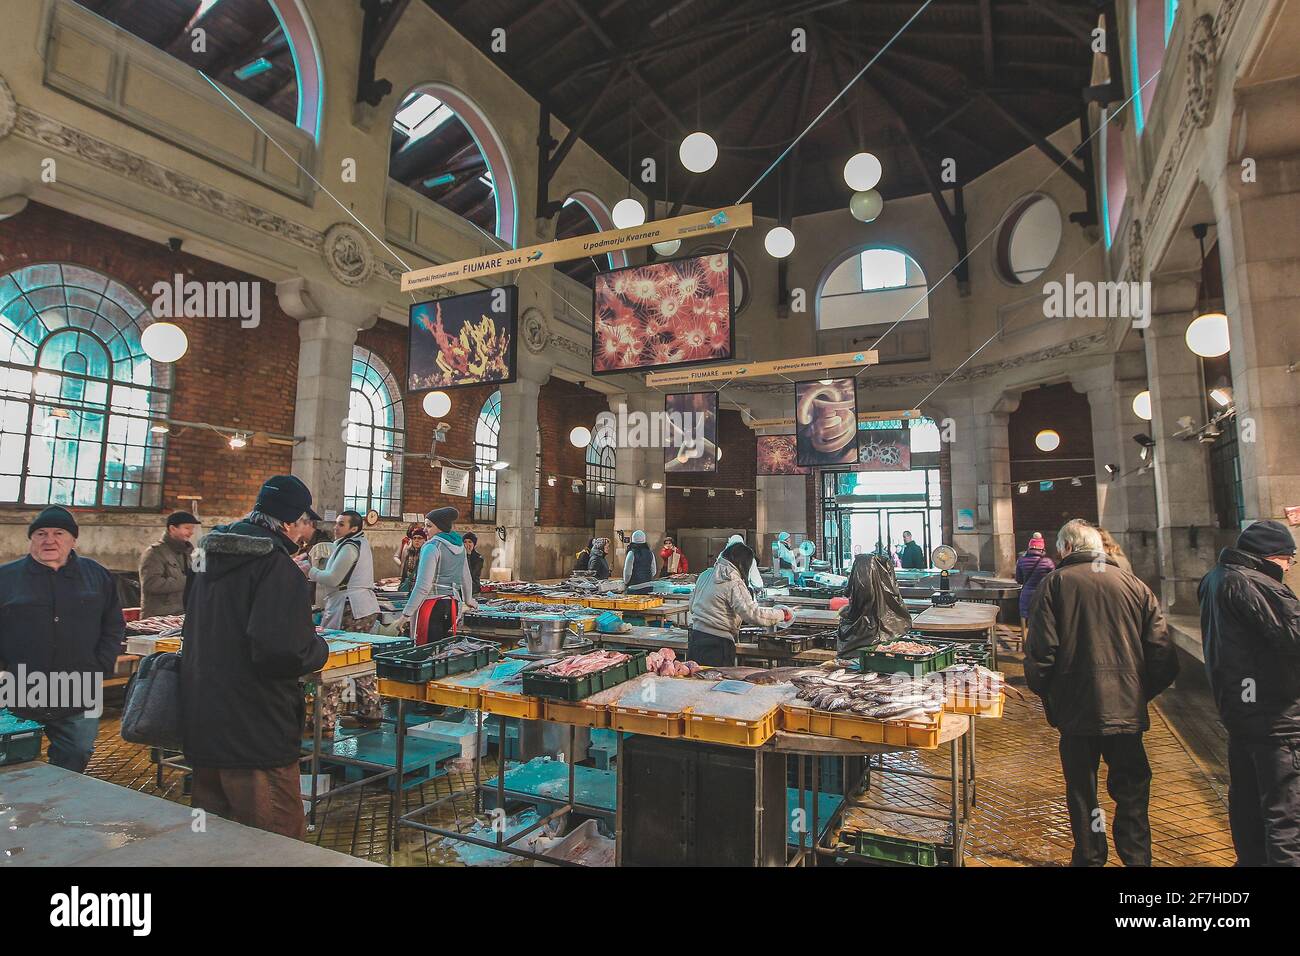 RIJEKA, KROATIEN, 7.2.2015: Zentraler Fischmarkt im Innenbereich, auf dem die Menschen frischen Fisch aus der Adria verarbeiten und kaufen Stockfoto